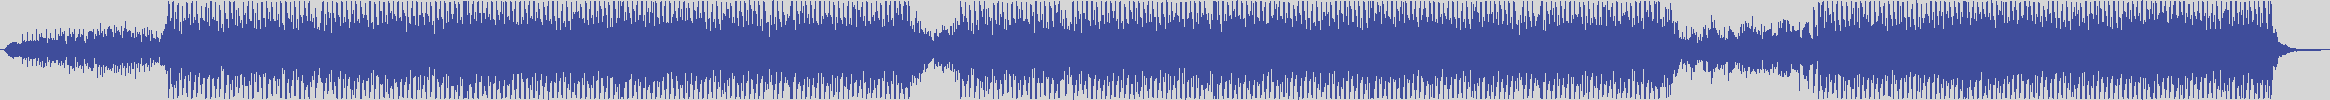 definitiva [DEF011] De - Javu - Never [De-Javu Mix] audio wave form